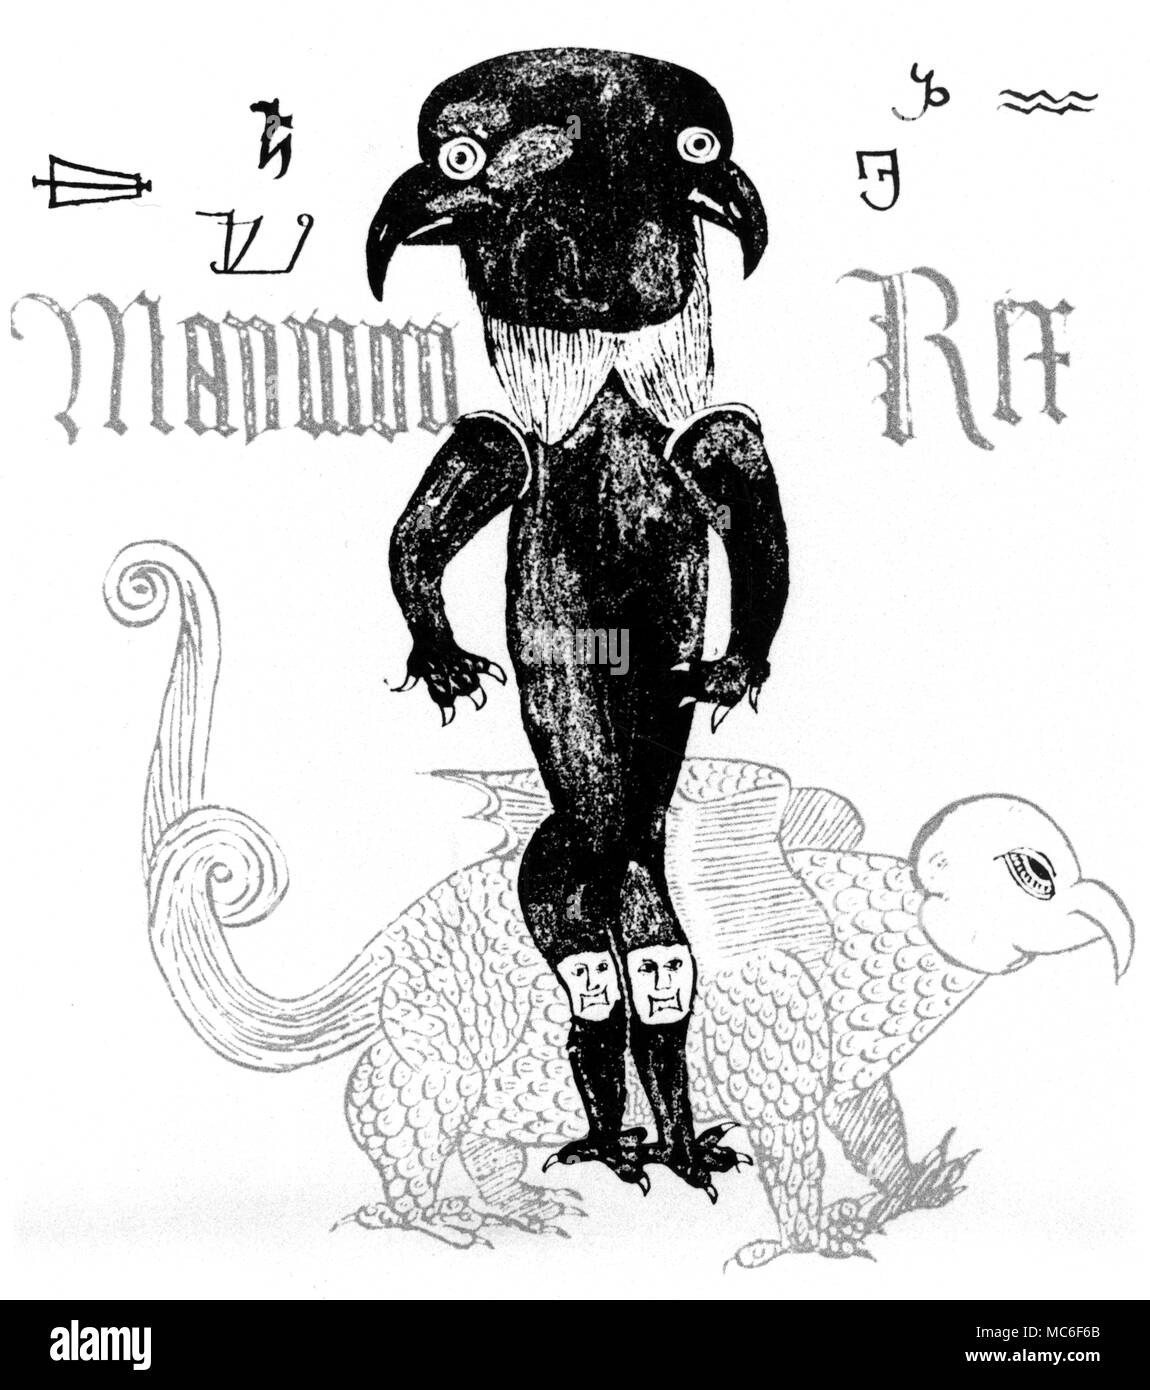 Página de un Inglés del siglo XVI Grimorio mss, con la imagen del pájaro-encabezada Maymon Rex (Rey mamón, presumiblemente), y una variedad de sigils demoníaca del Salomón rey grimorio. Este demonio de dos caras es una reliquia de la Egipcia, Horus, quien fue, en su papel de Haroeris, dada la cabeza de un halcón. Foto de stock